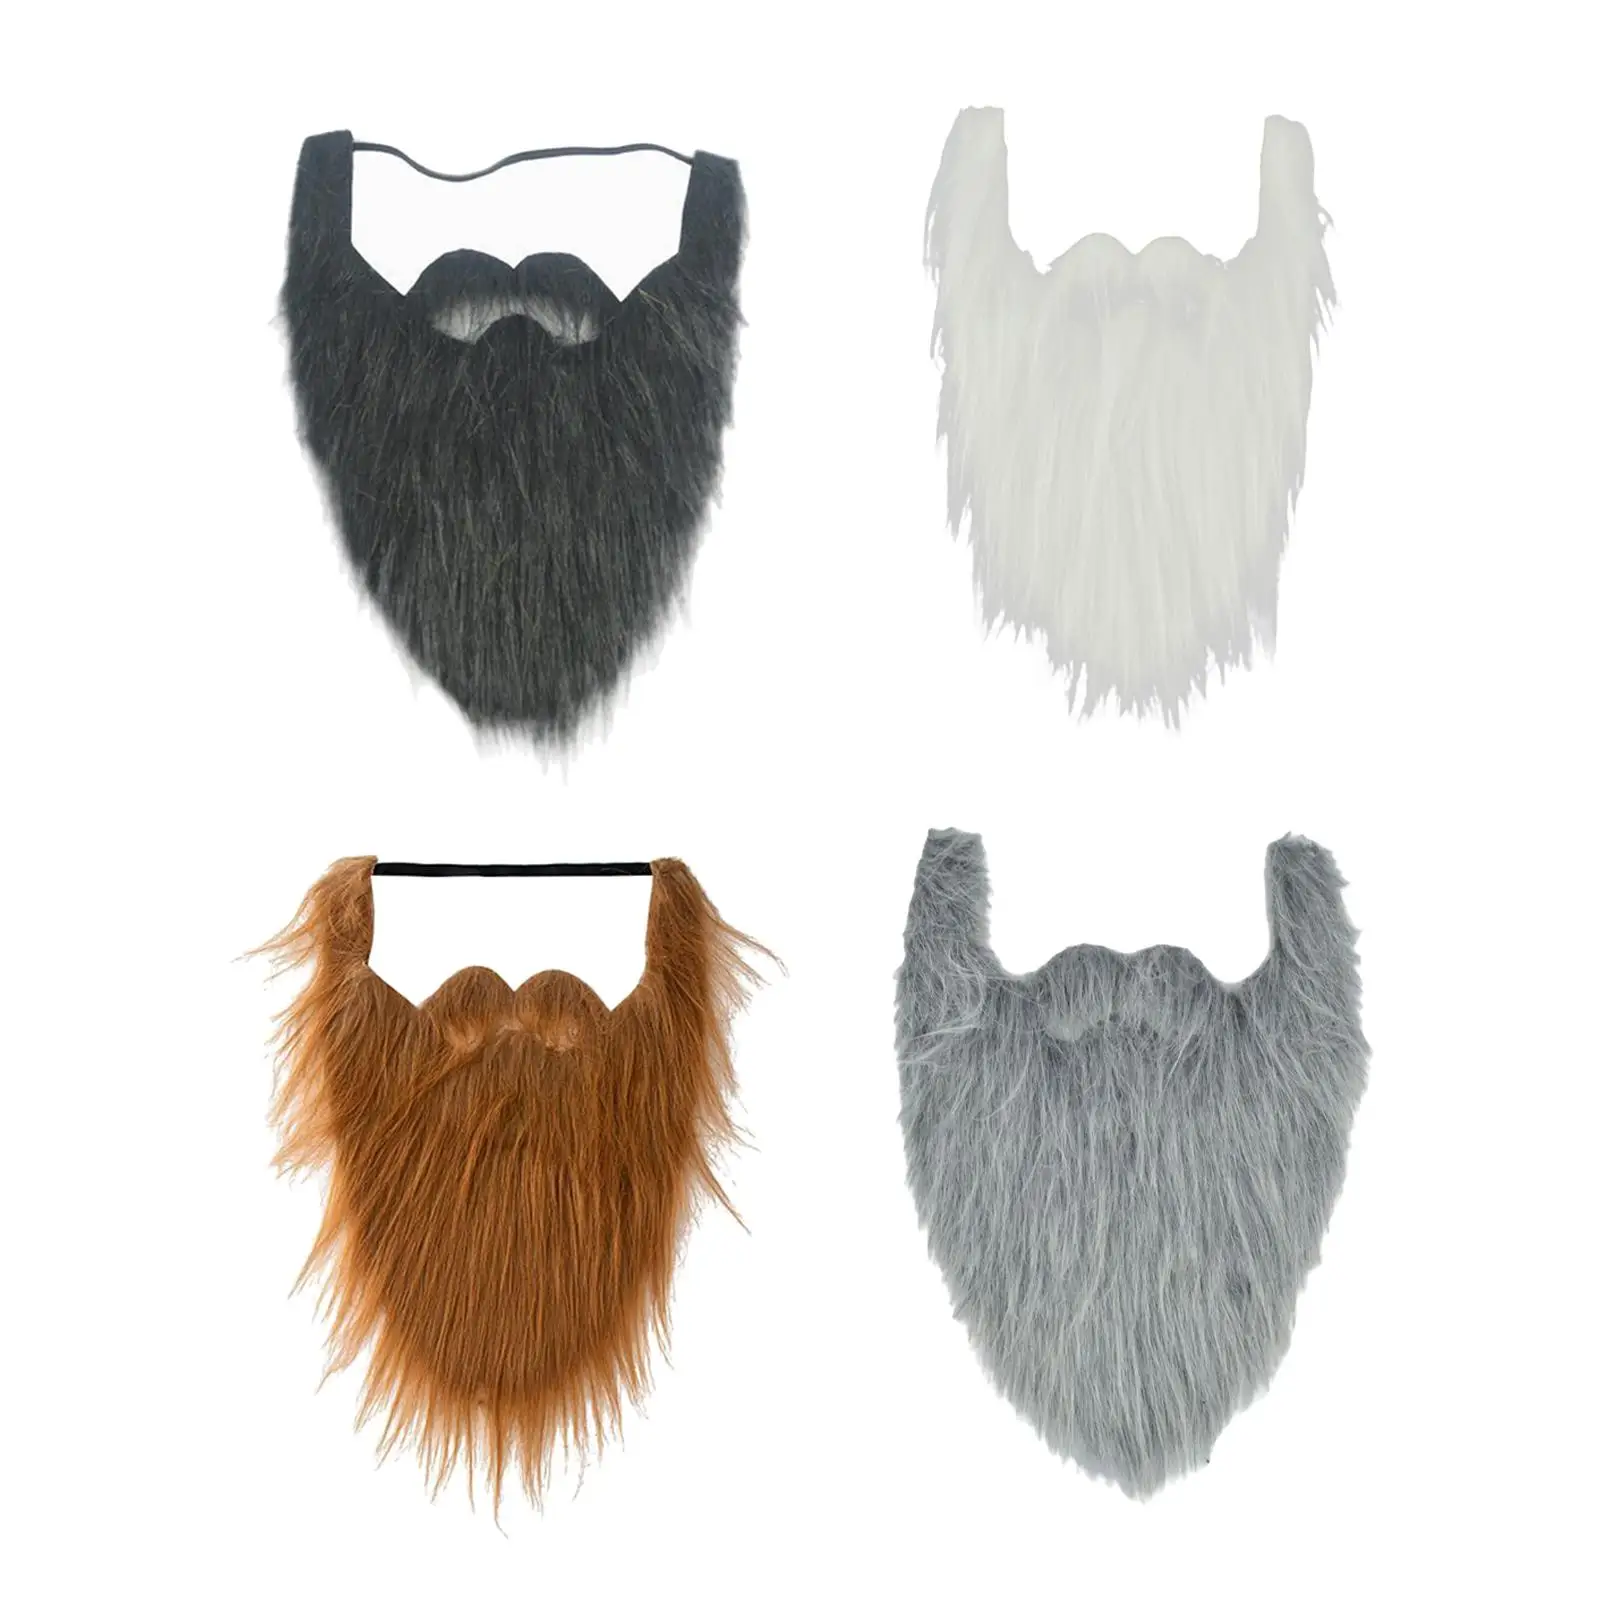 Long False Beard Costume Party Supplies Women Men Kids Mustaches Facial Hair  - Beard - AliExpress